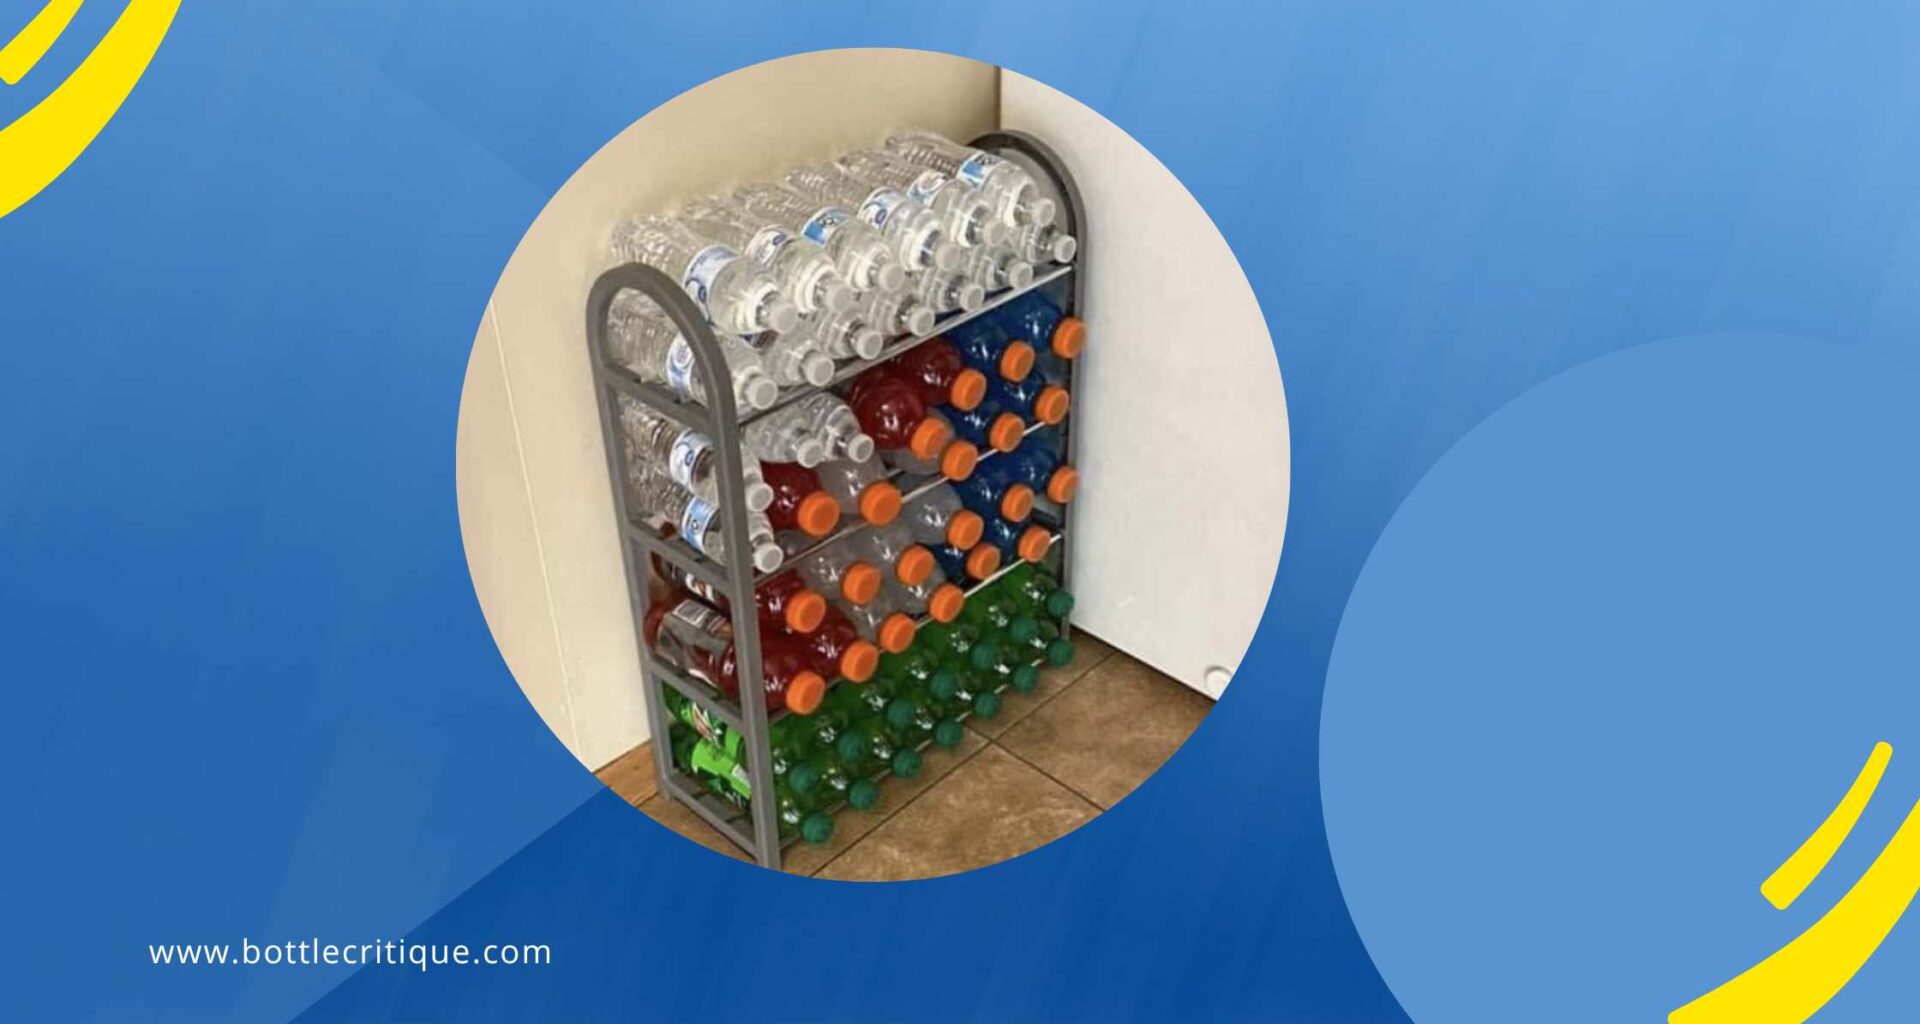 16 Oz Water Bottle Storage Ideas: Complete List!